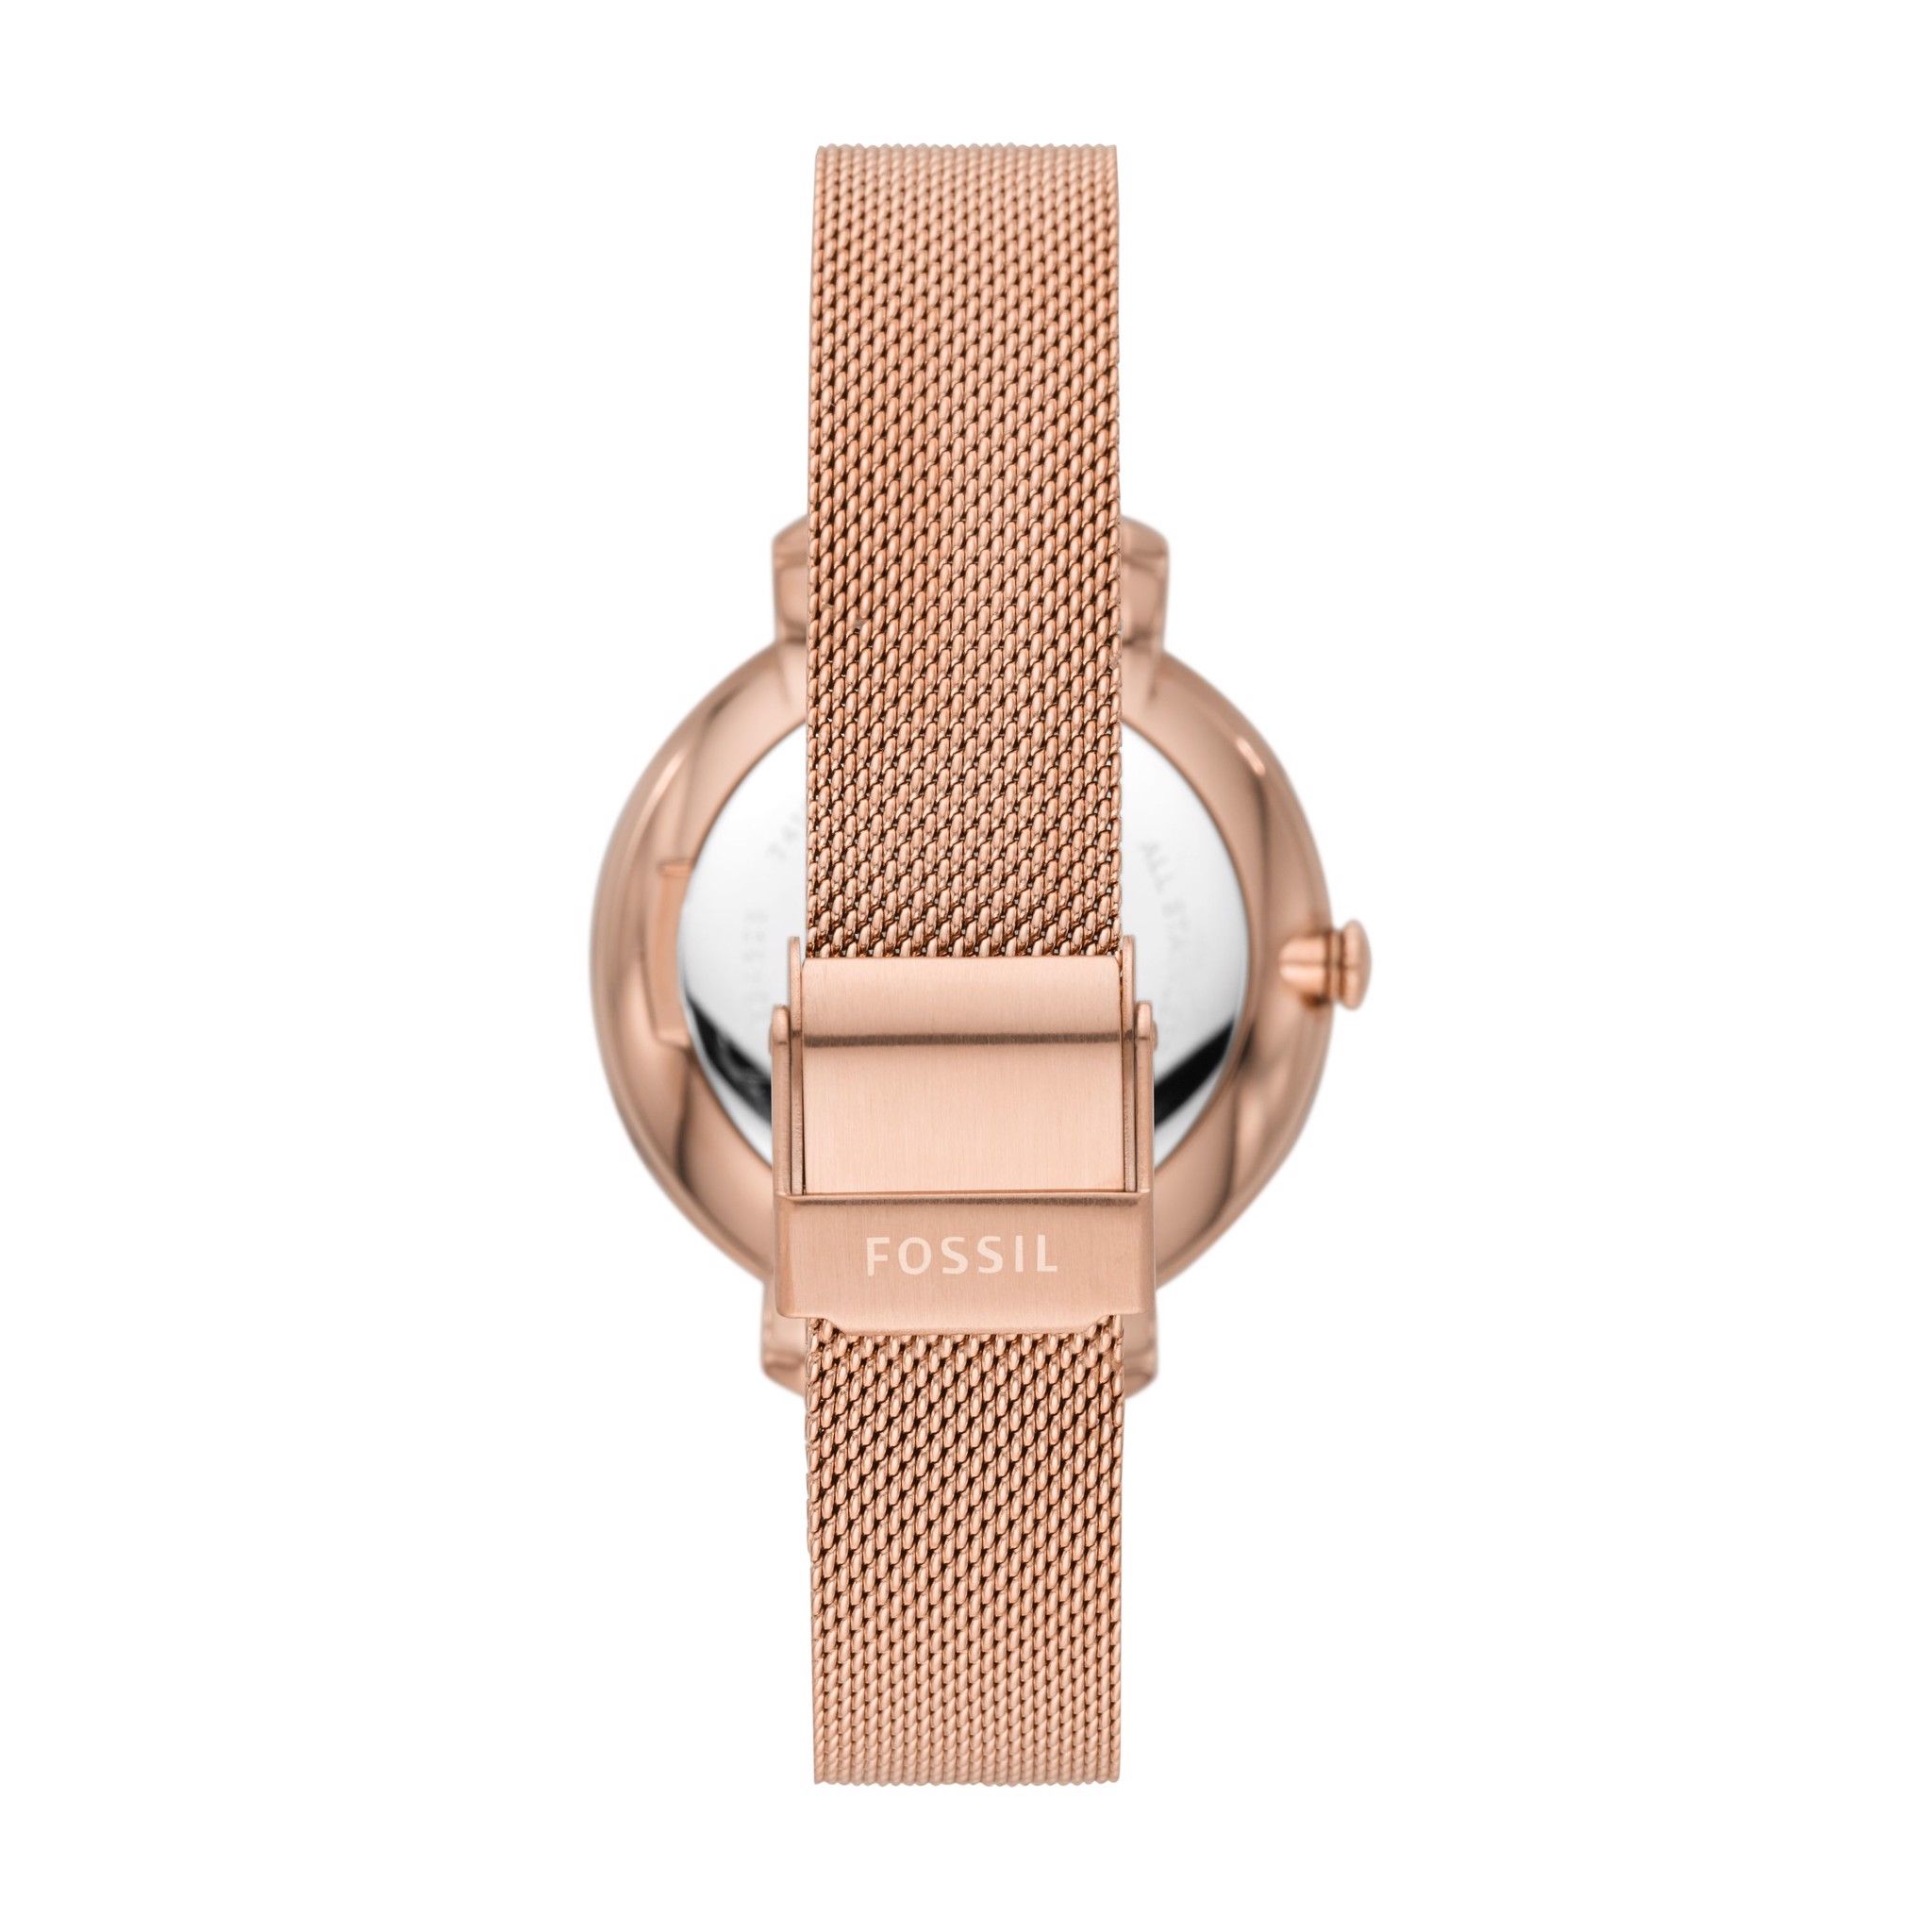  Đồng hồ Kim nữ Fossil JACQUELINE dây kim loại ES4628 - màu vàng hồng 